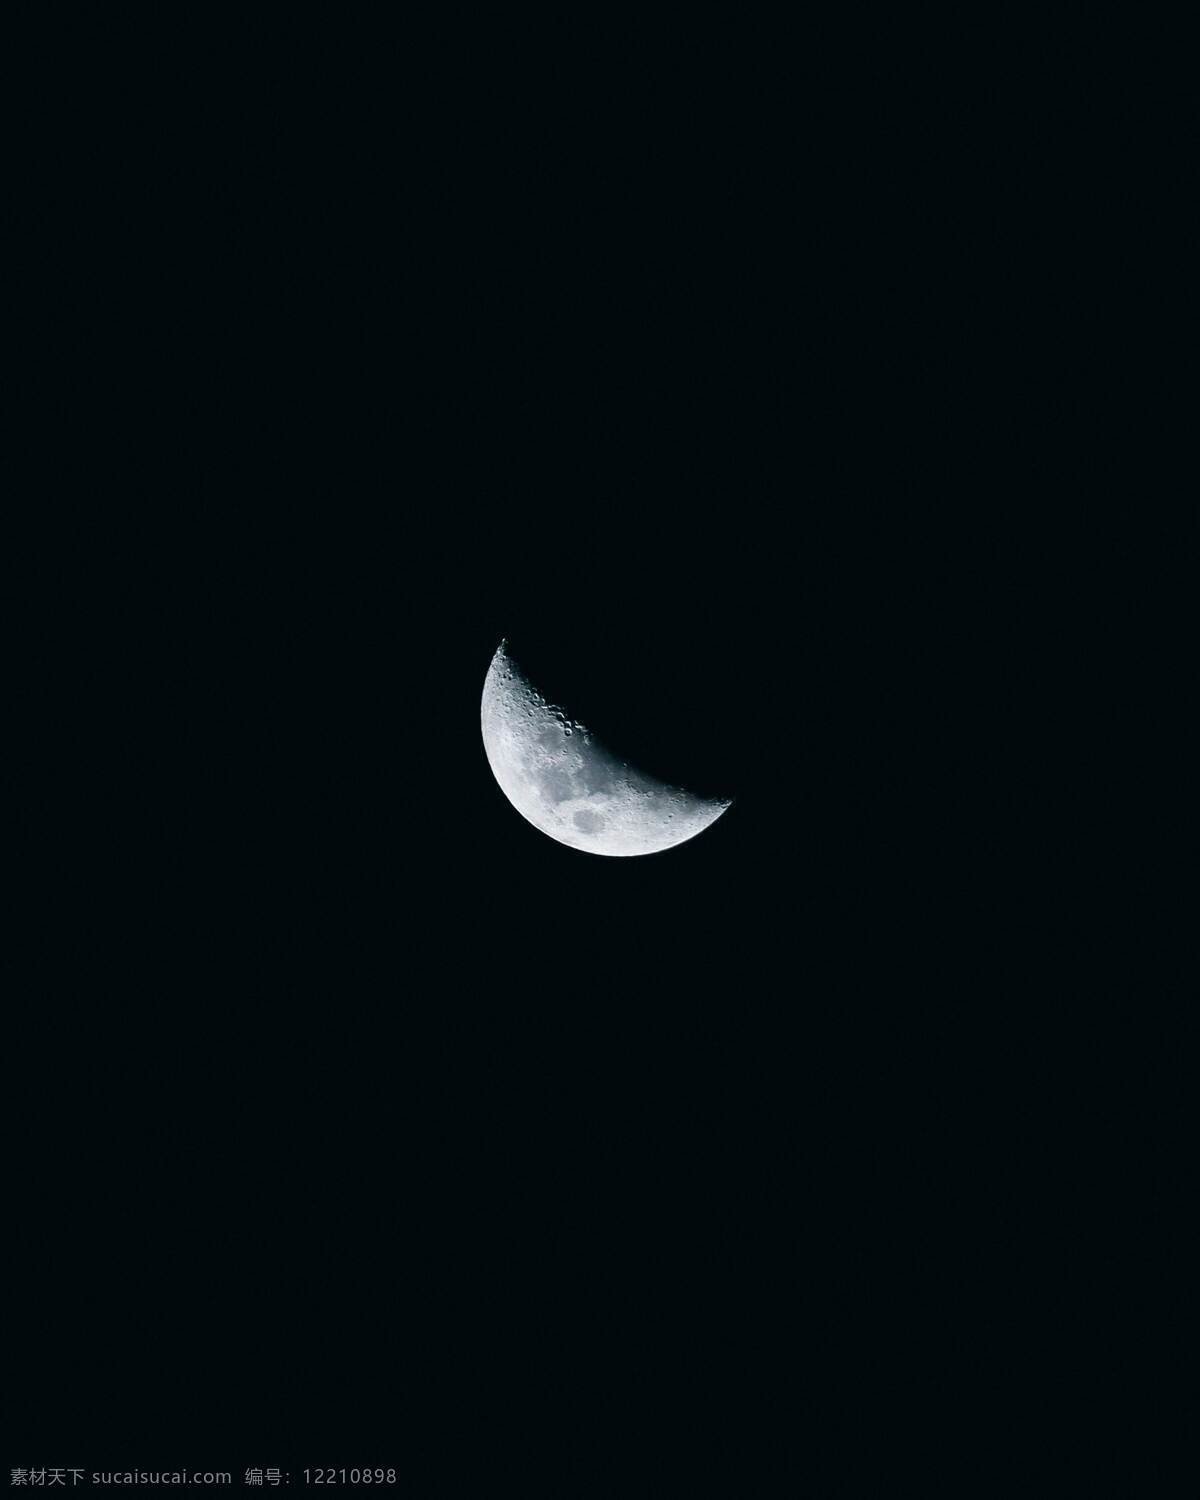 一弯月亮图片 月亮 弯月 夜空 新月 月球 夜晚 自然景观 自然风景